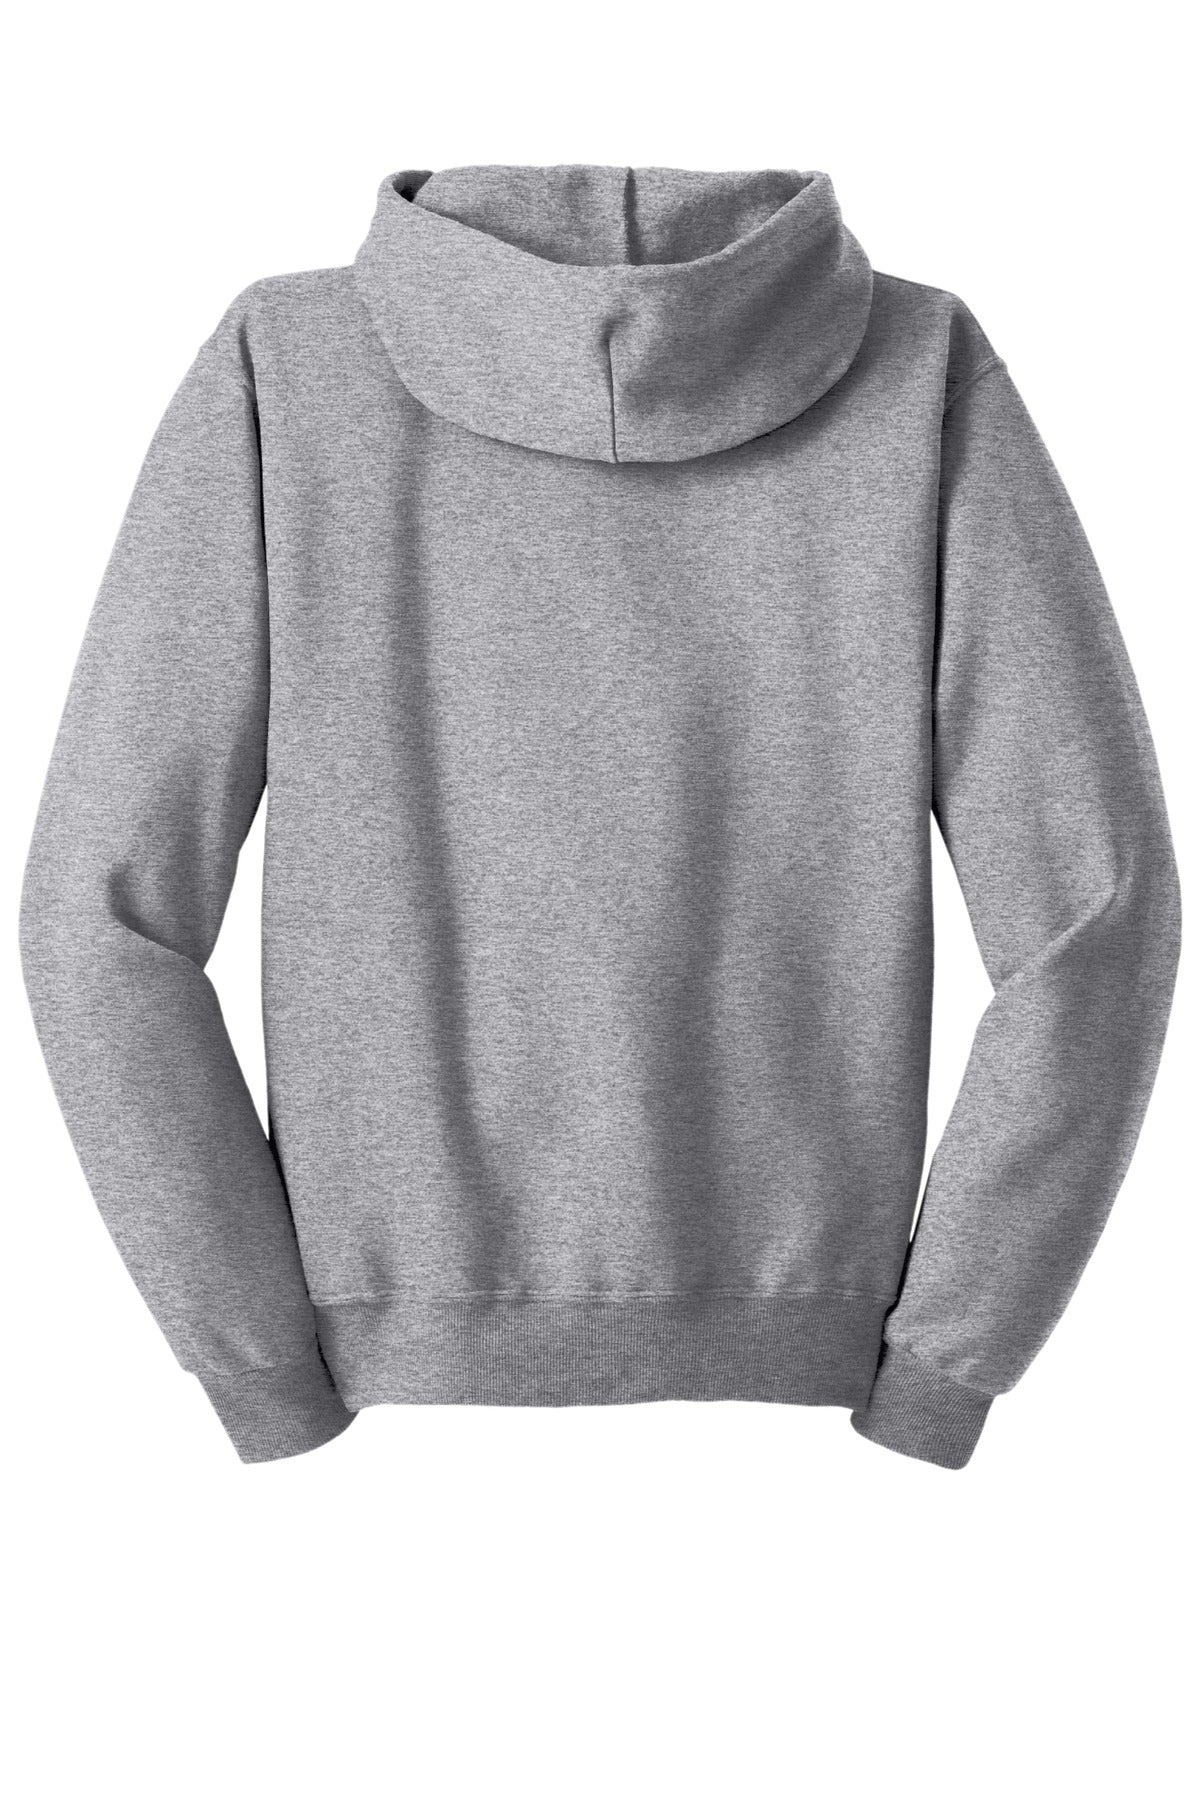 Jerzees - NuBlend Full-Zip Hooded Sweatshirt. J993M